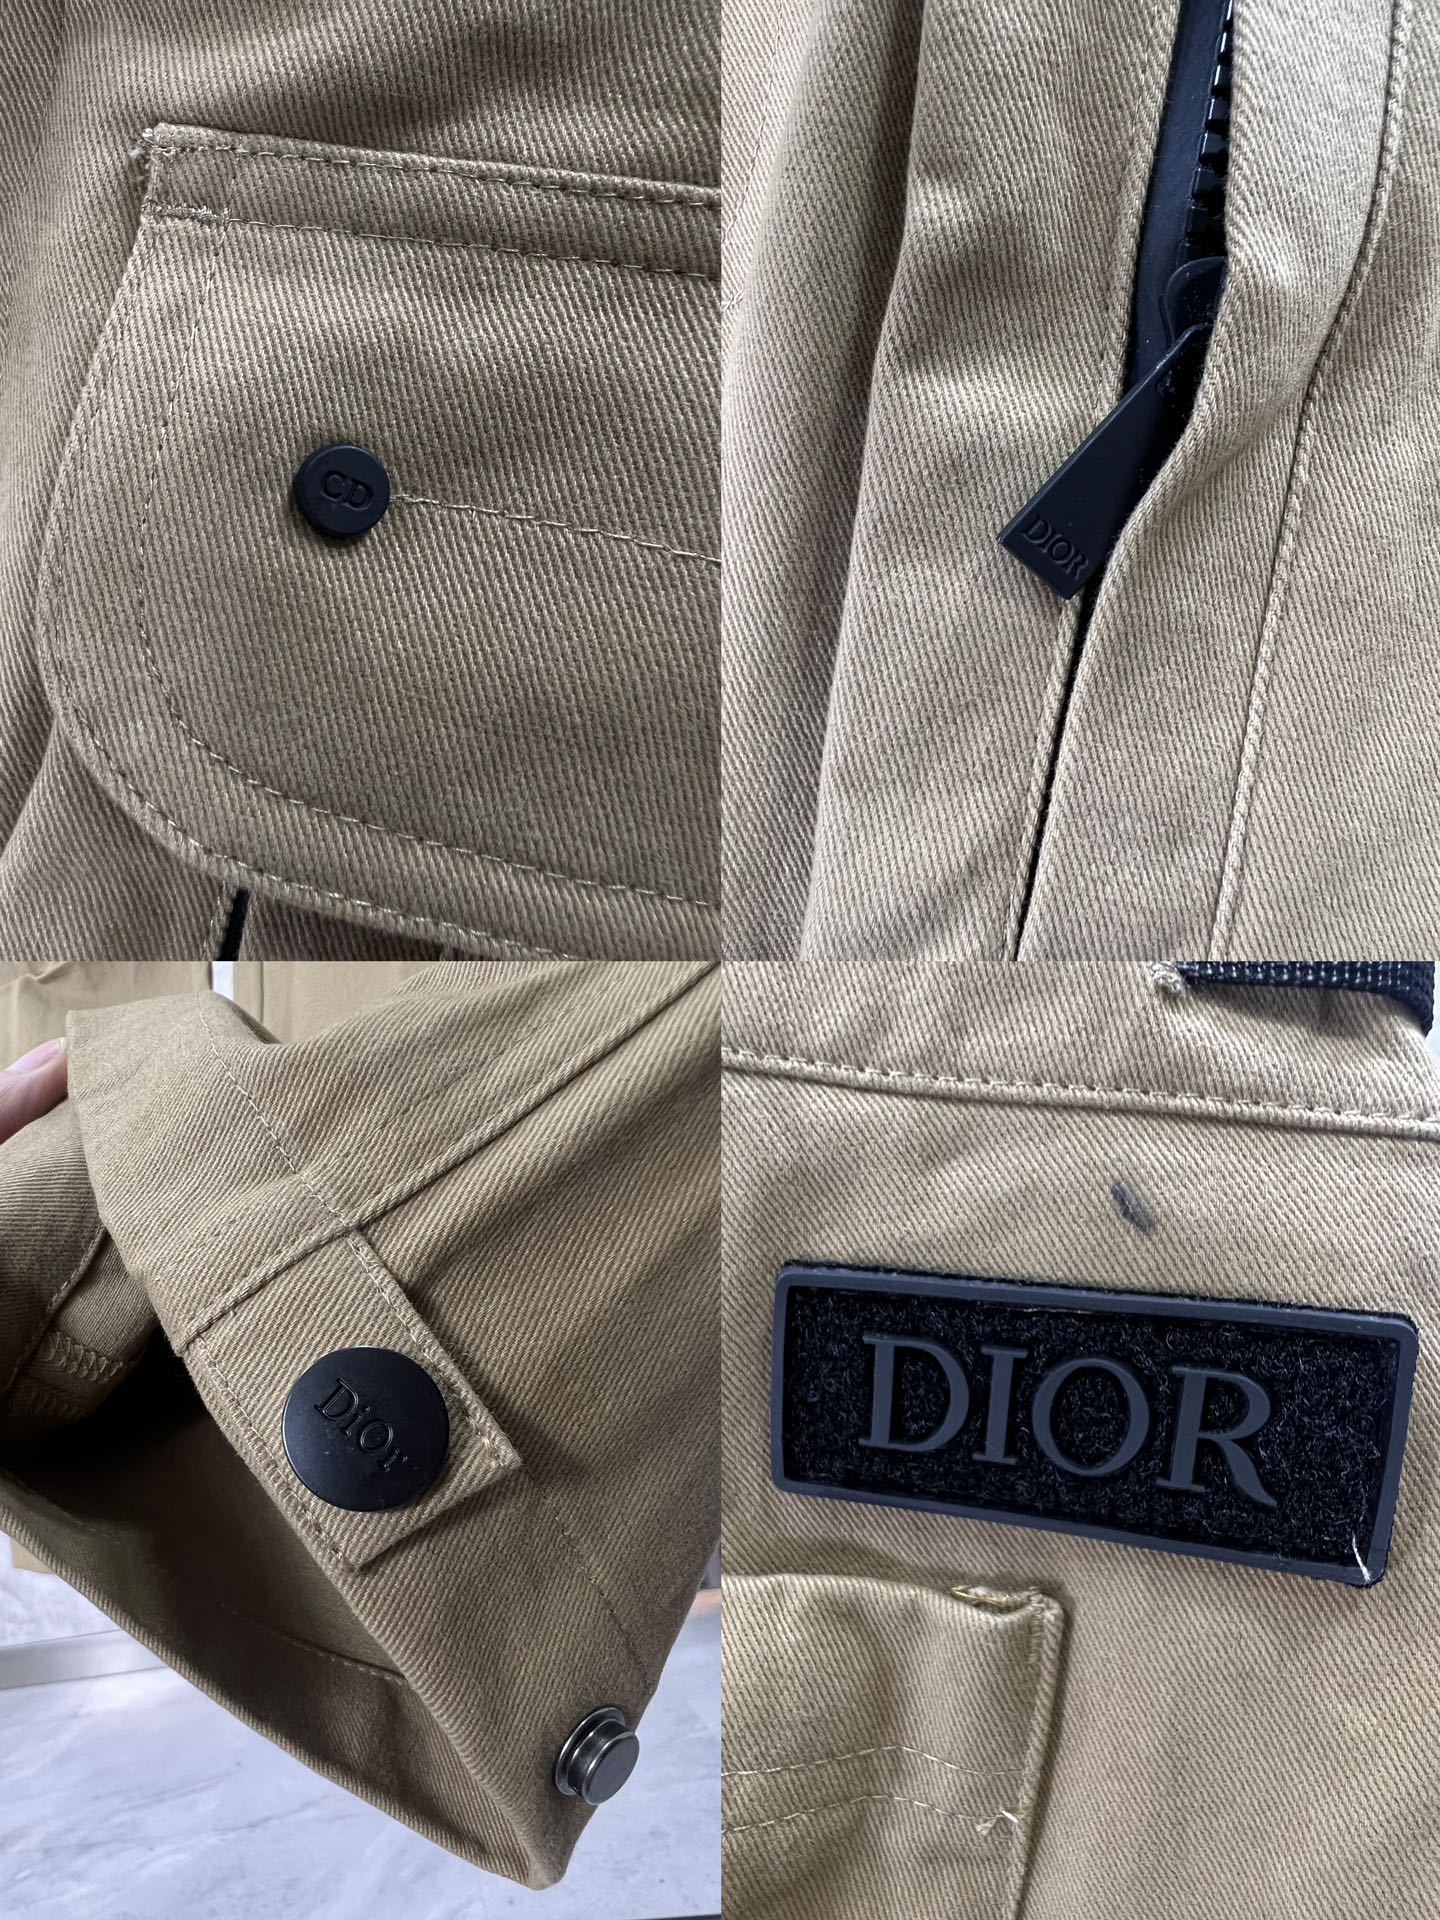 Dior迪奥新款徽标锁扣工装裤这款工装裤采用轻盈的弹力棉质华达呢精制而成采用中腰设计多口袋工装口袋饰有“